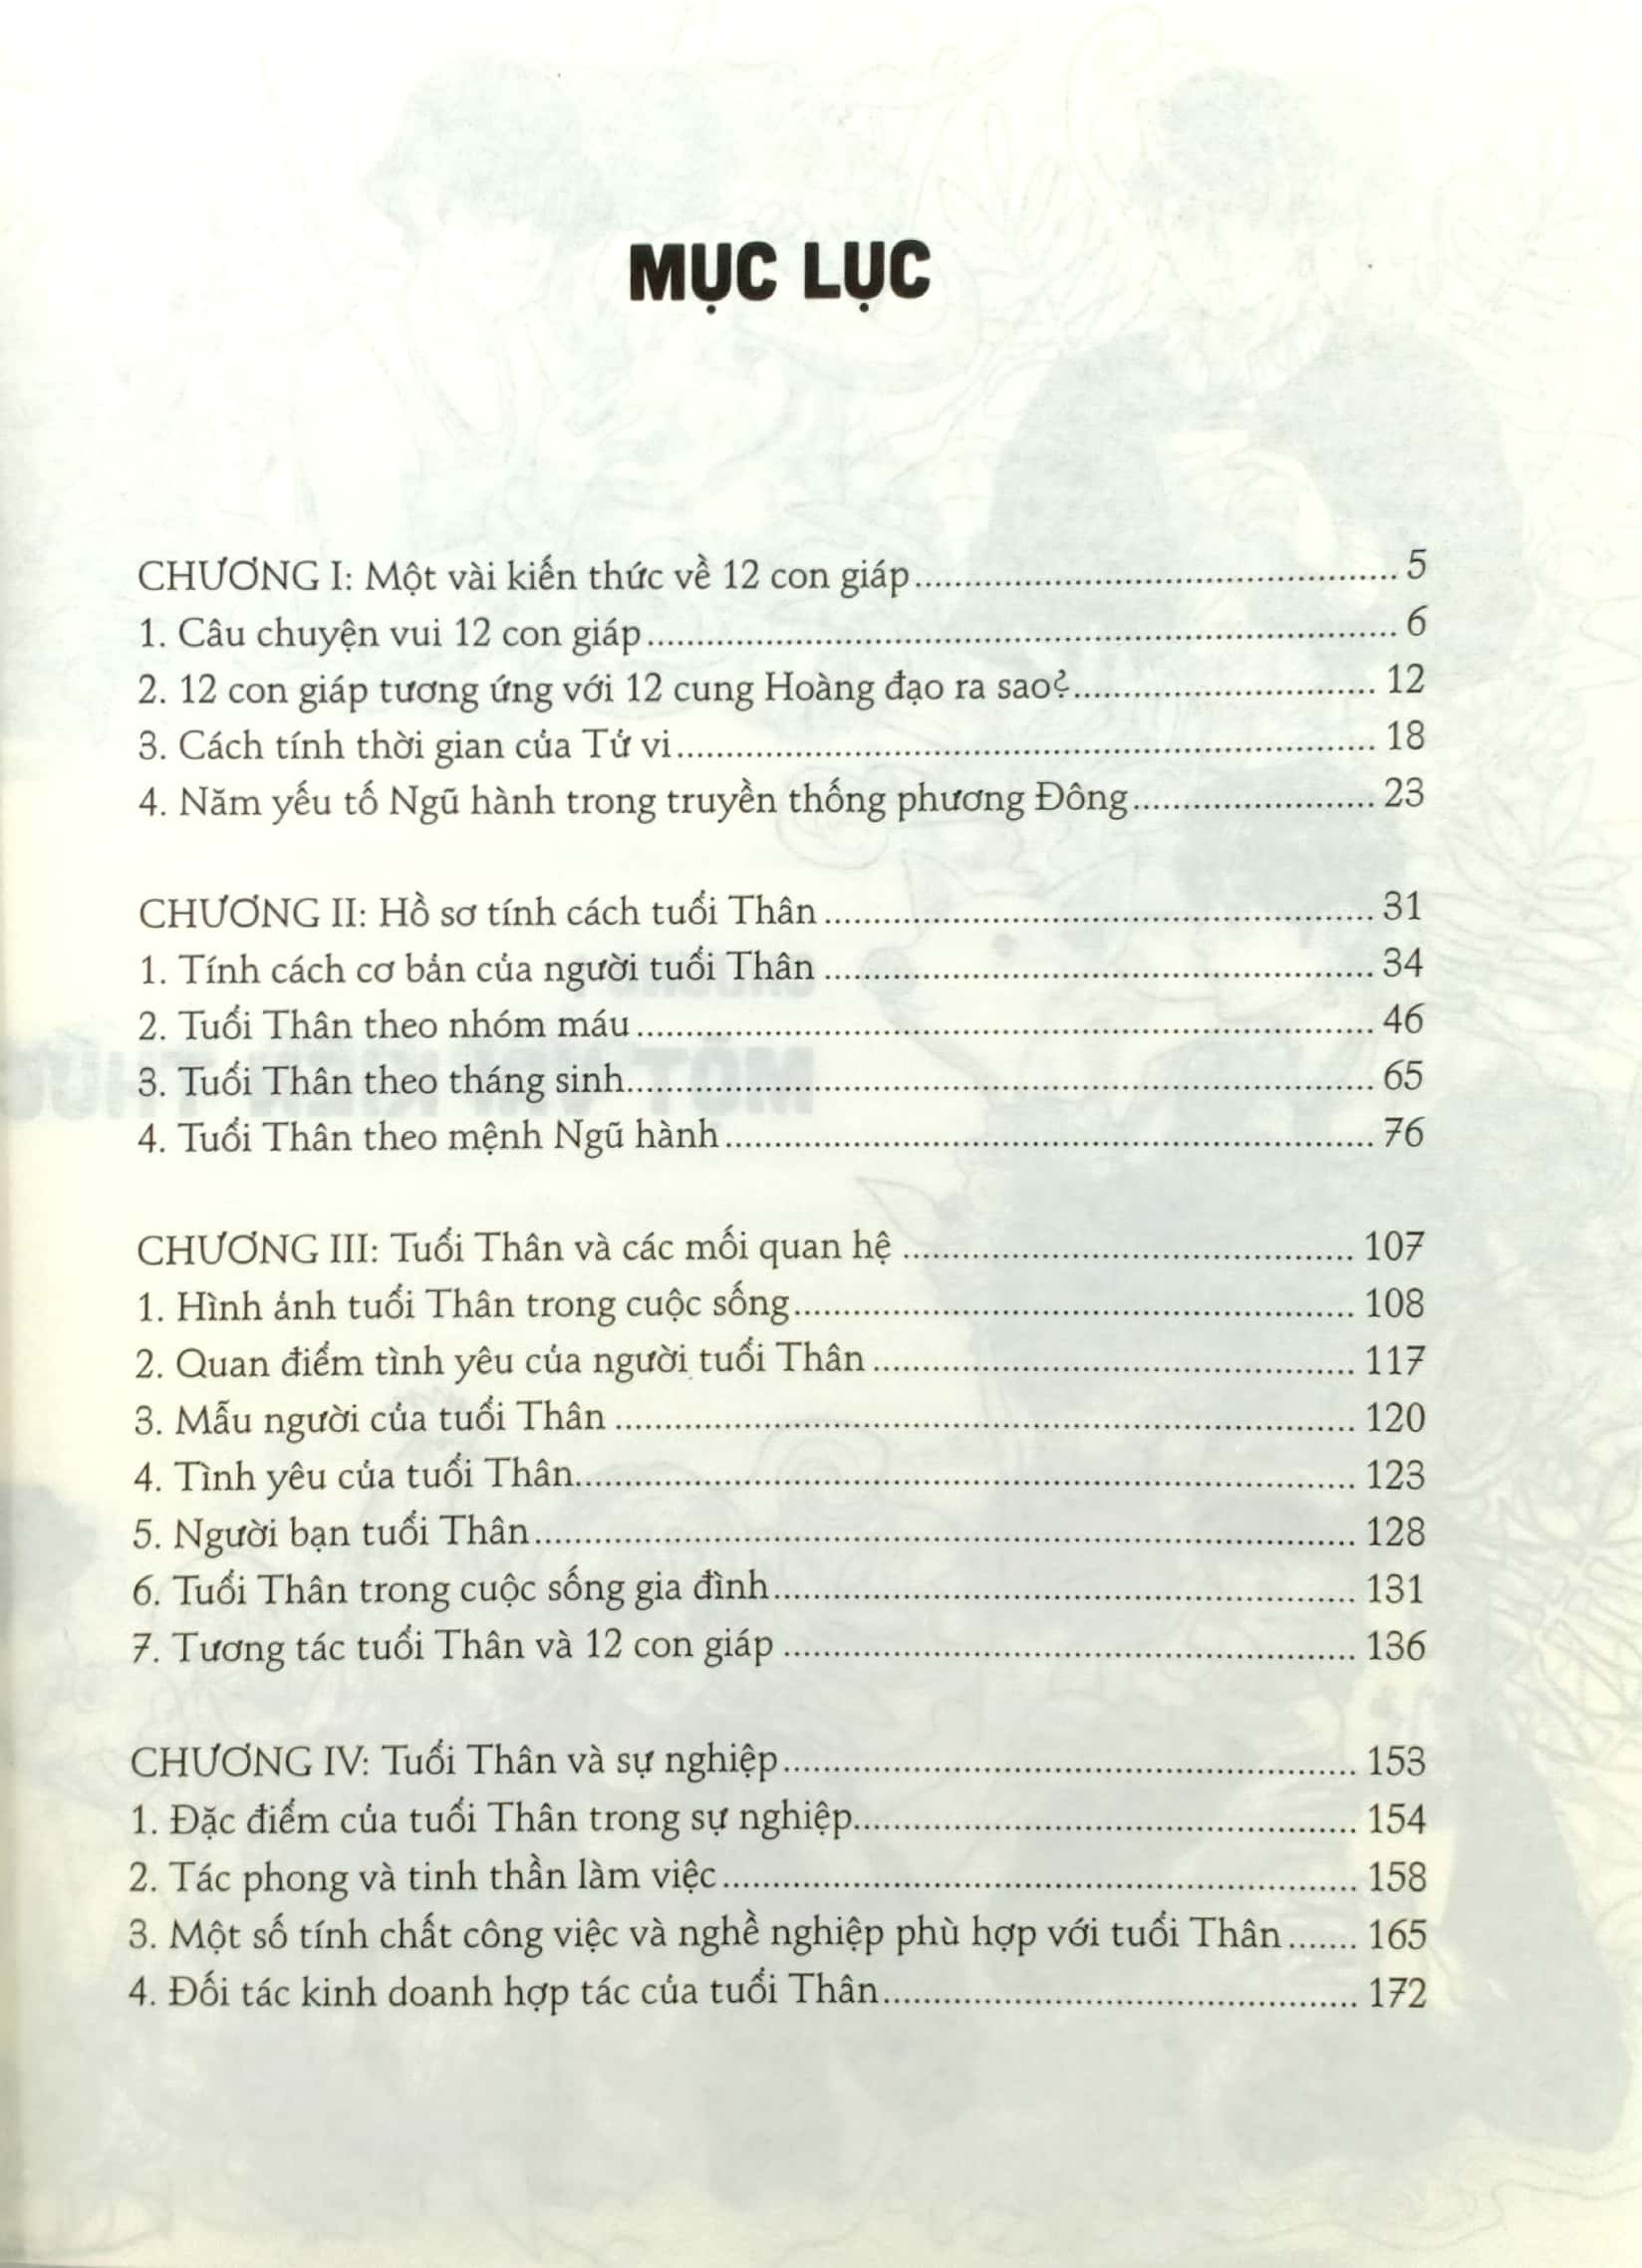 Hồ Sơ Tính Cách 12 Con Giáp - Bí Mật Tuổi Thân - Tặng Kèm Postcard PDF